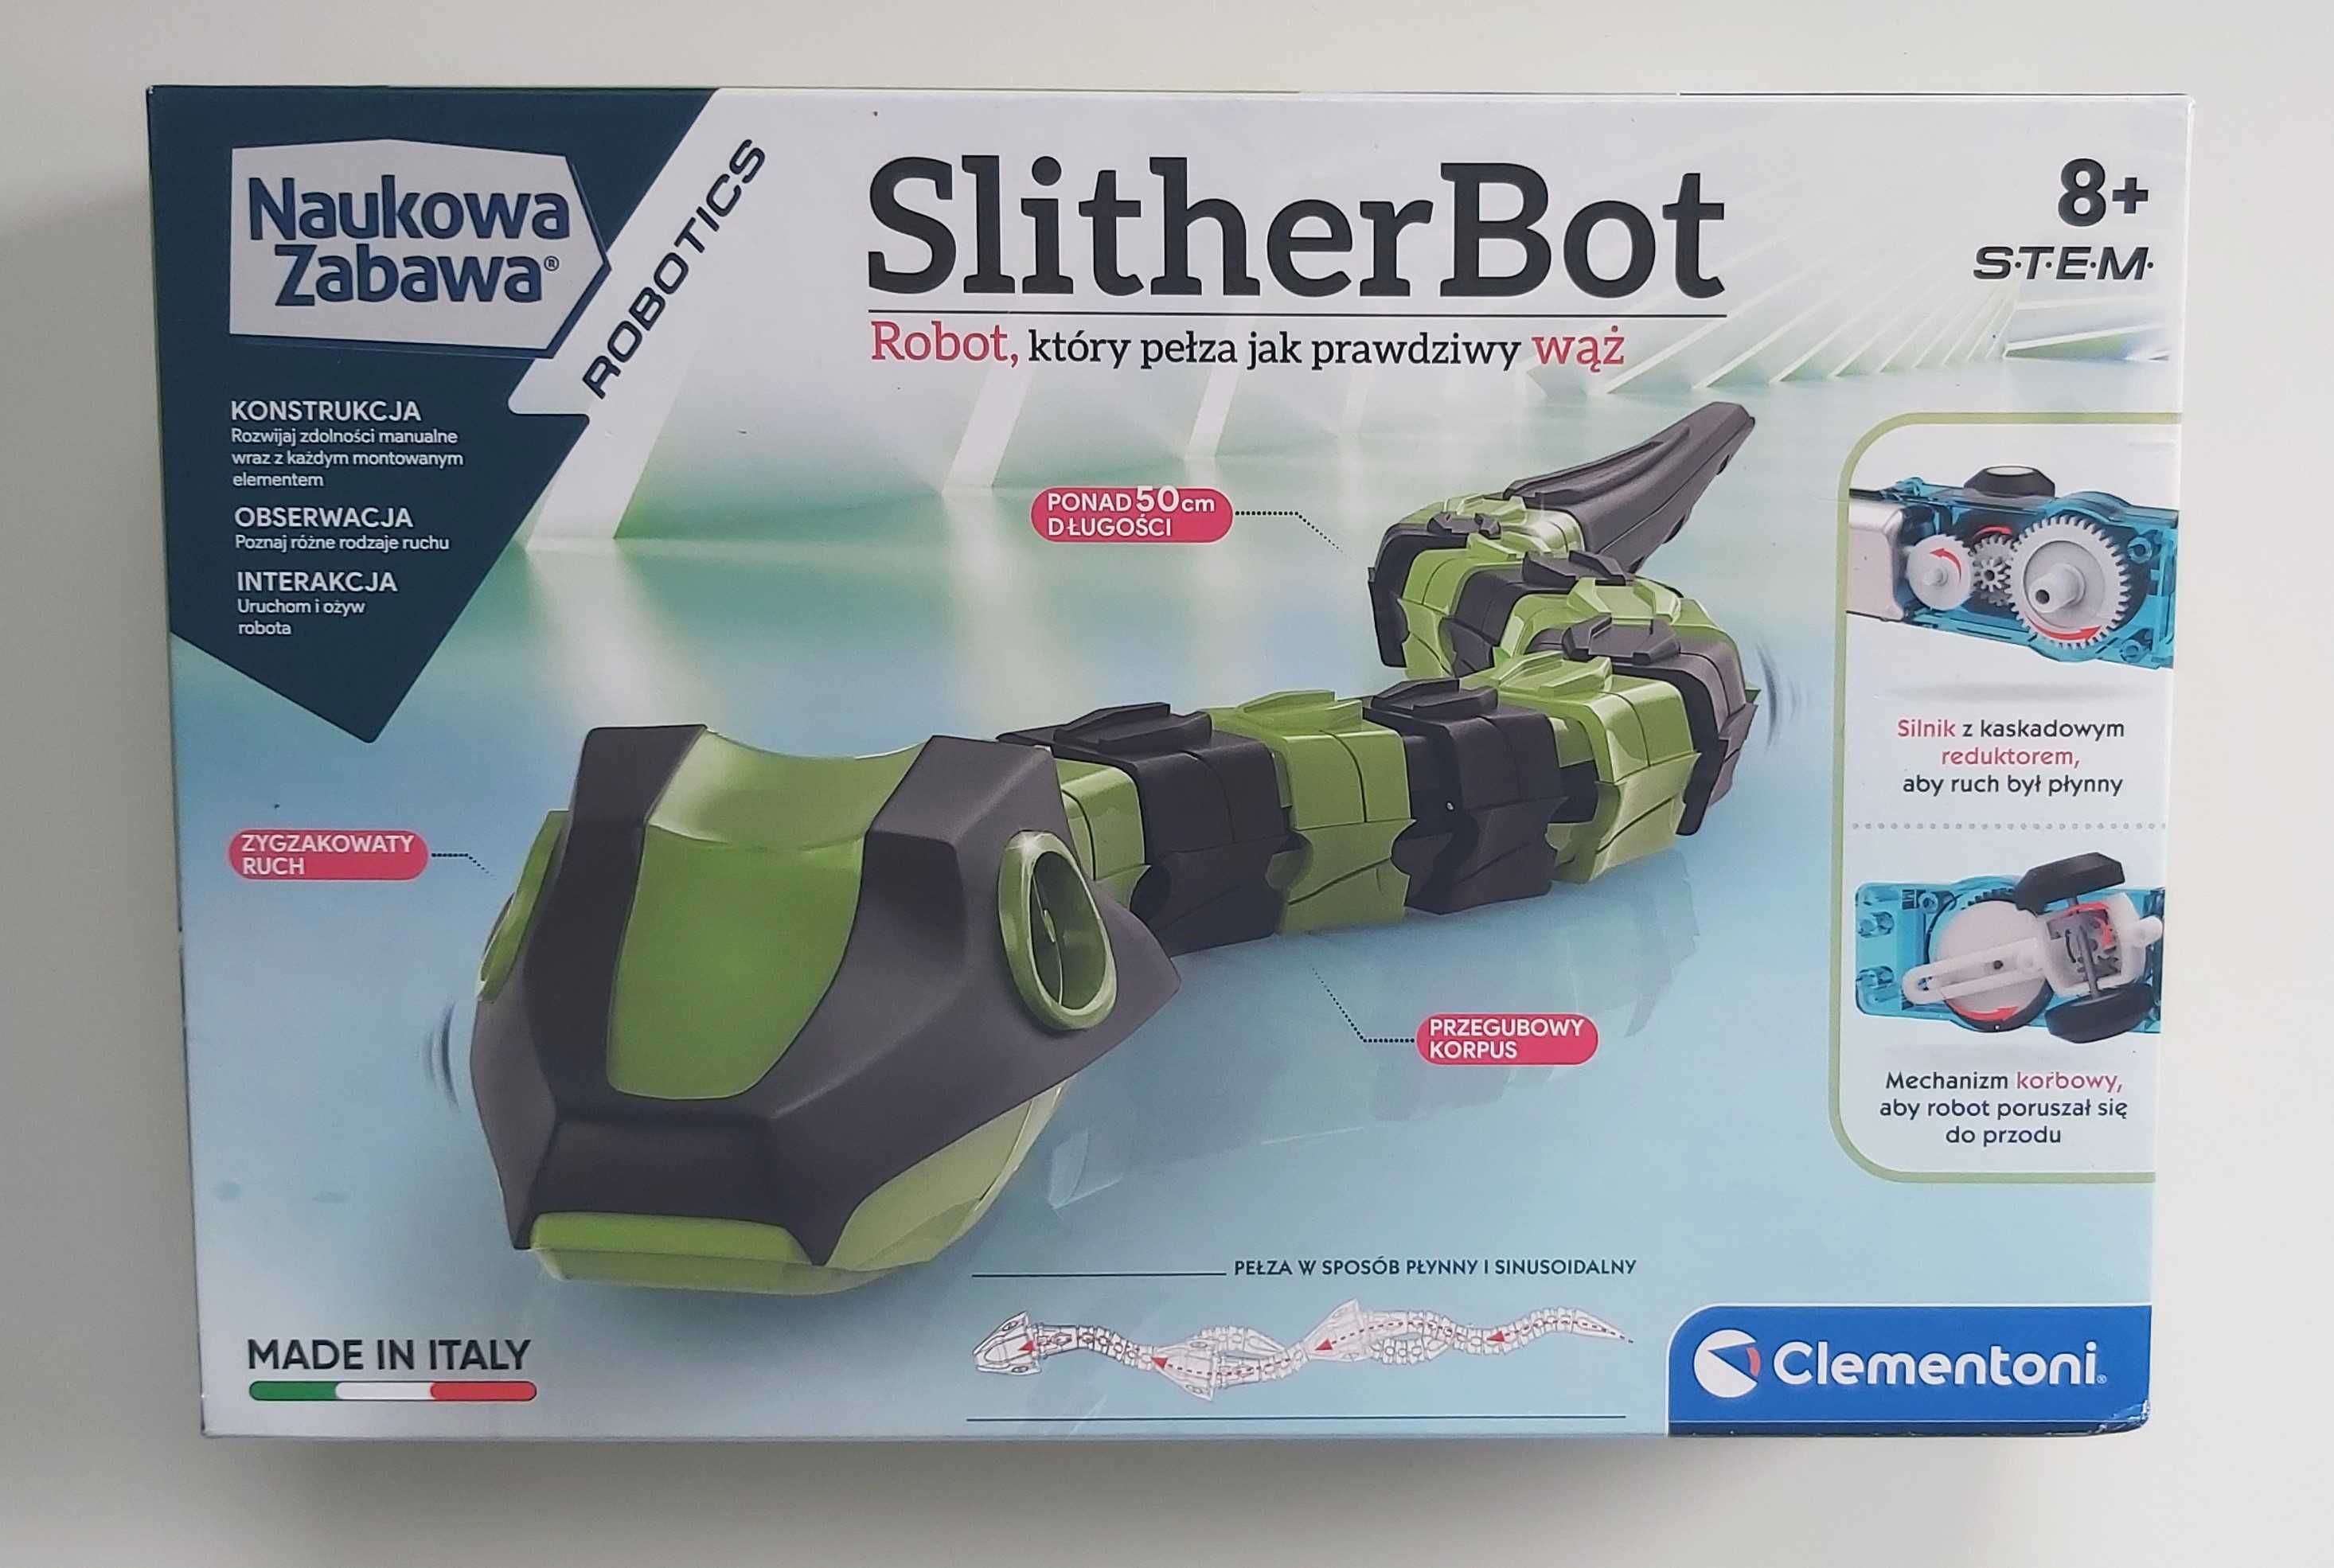 SlitherBot- Pełzający wąż robot NAUKOWA ZABAWA